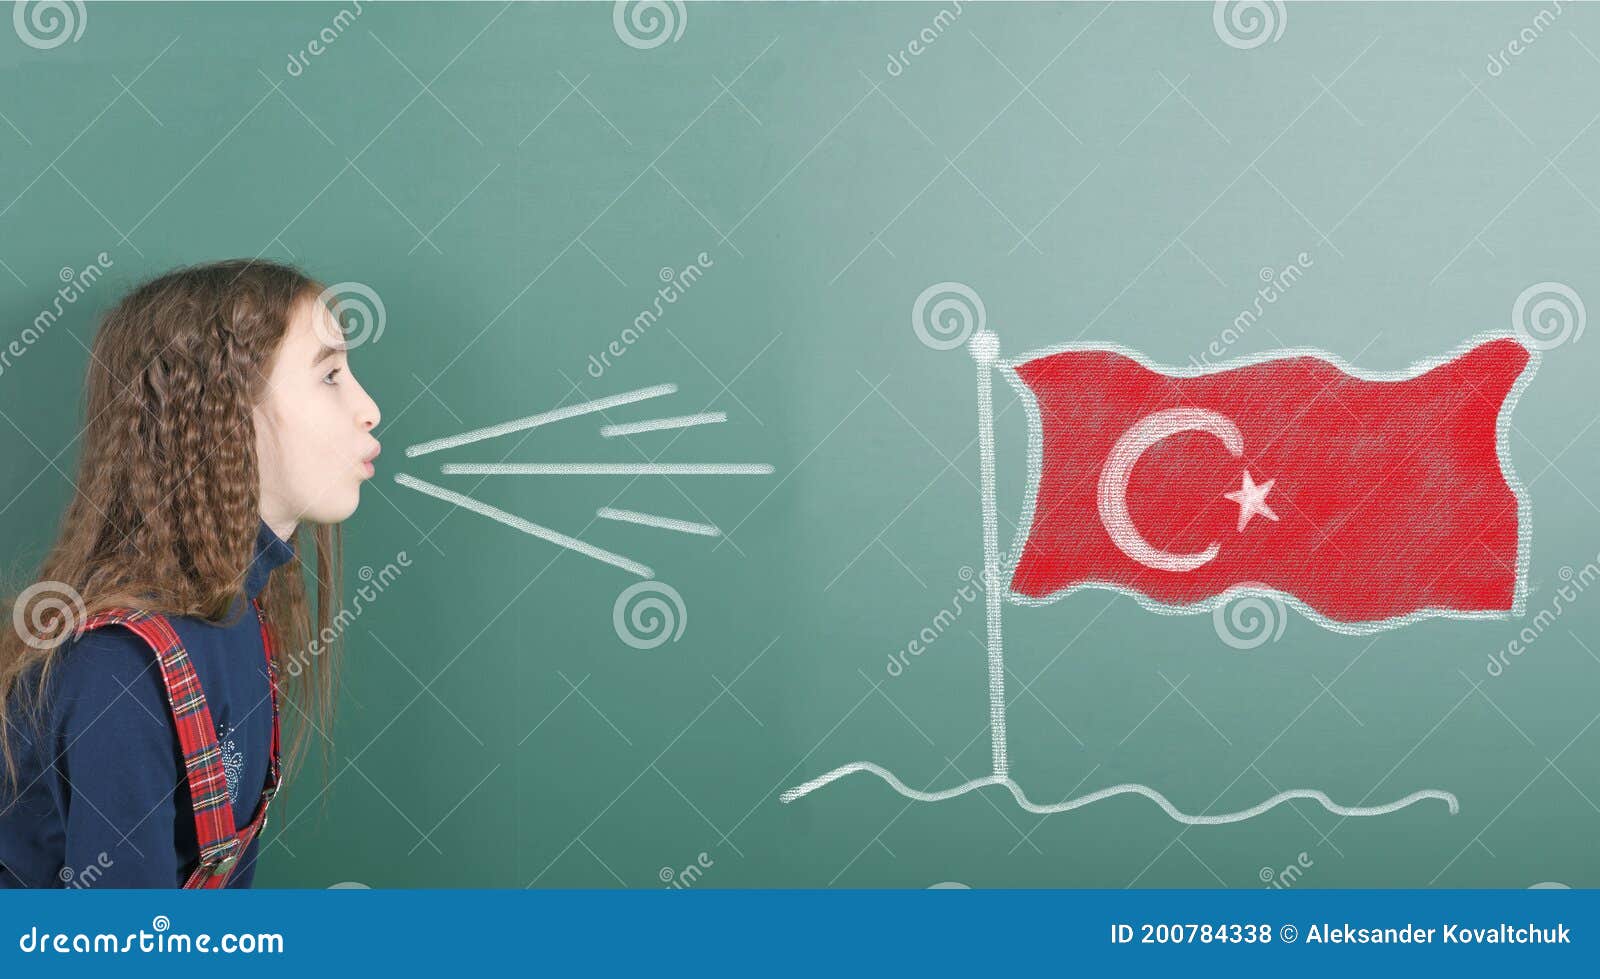 Tableau drapeau turquie